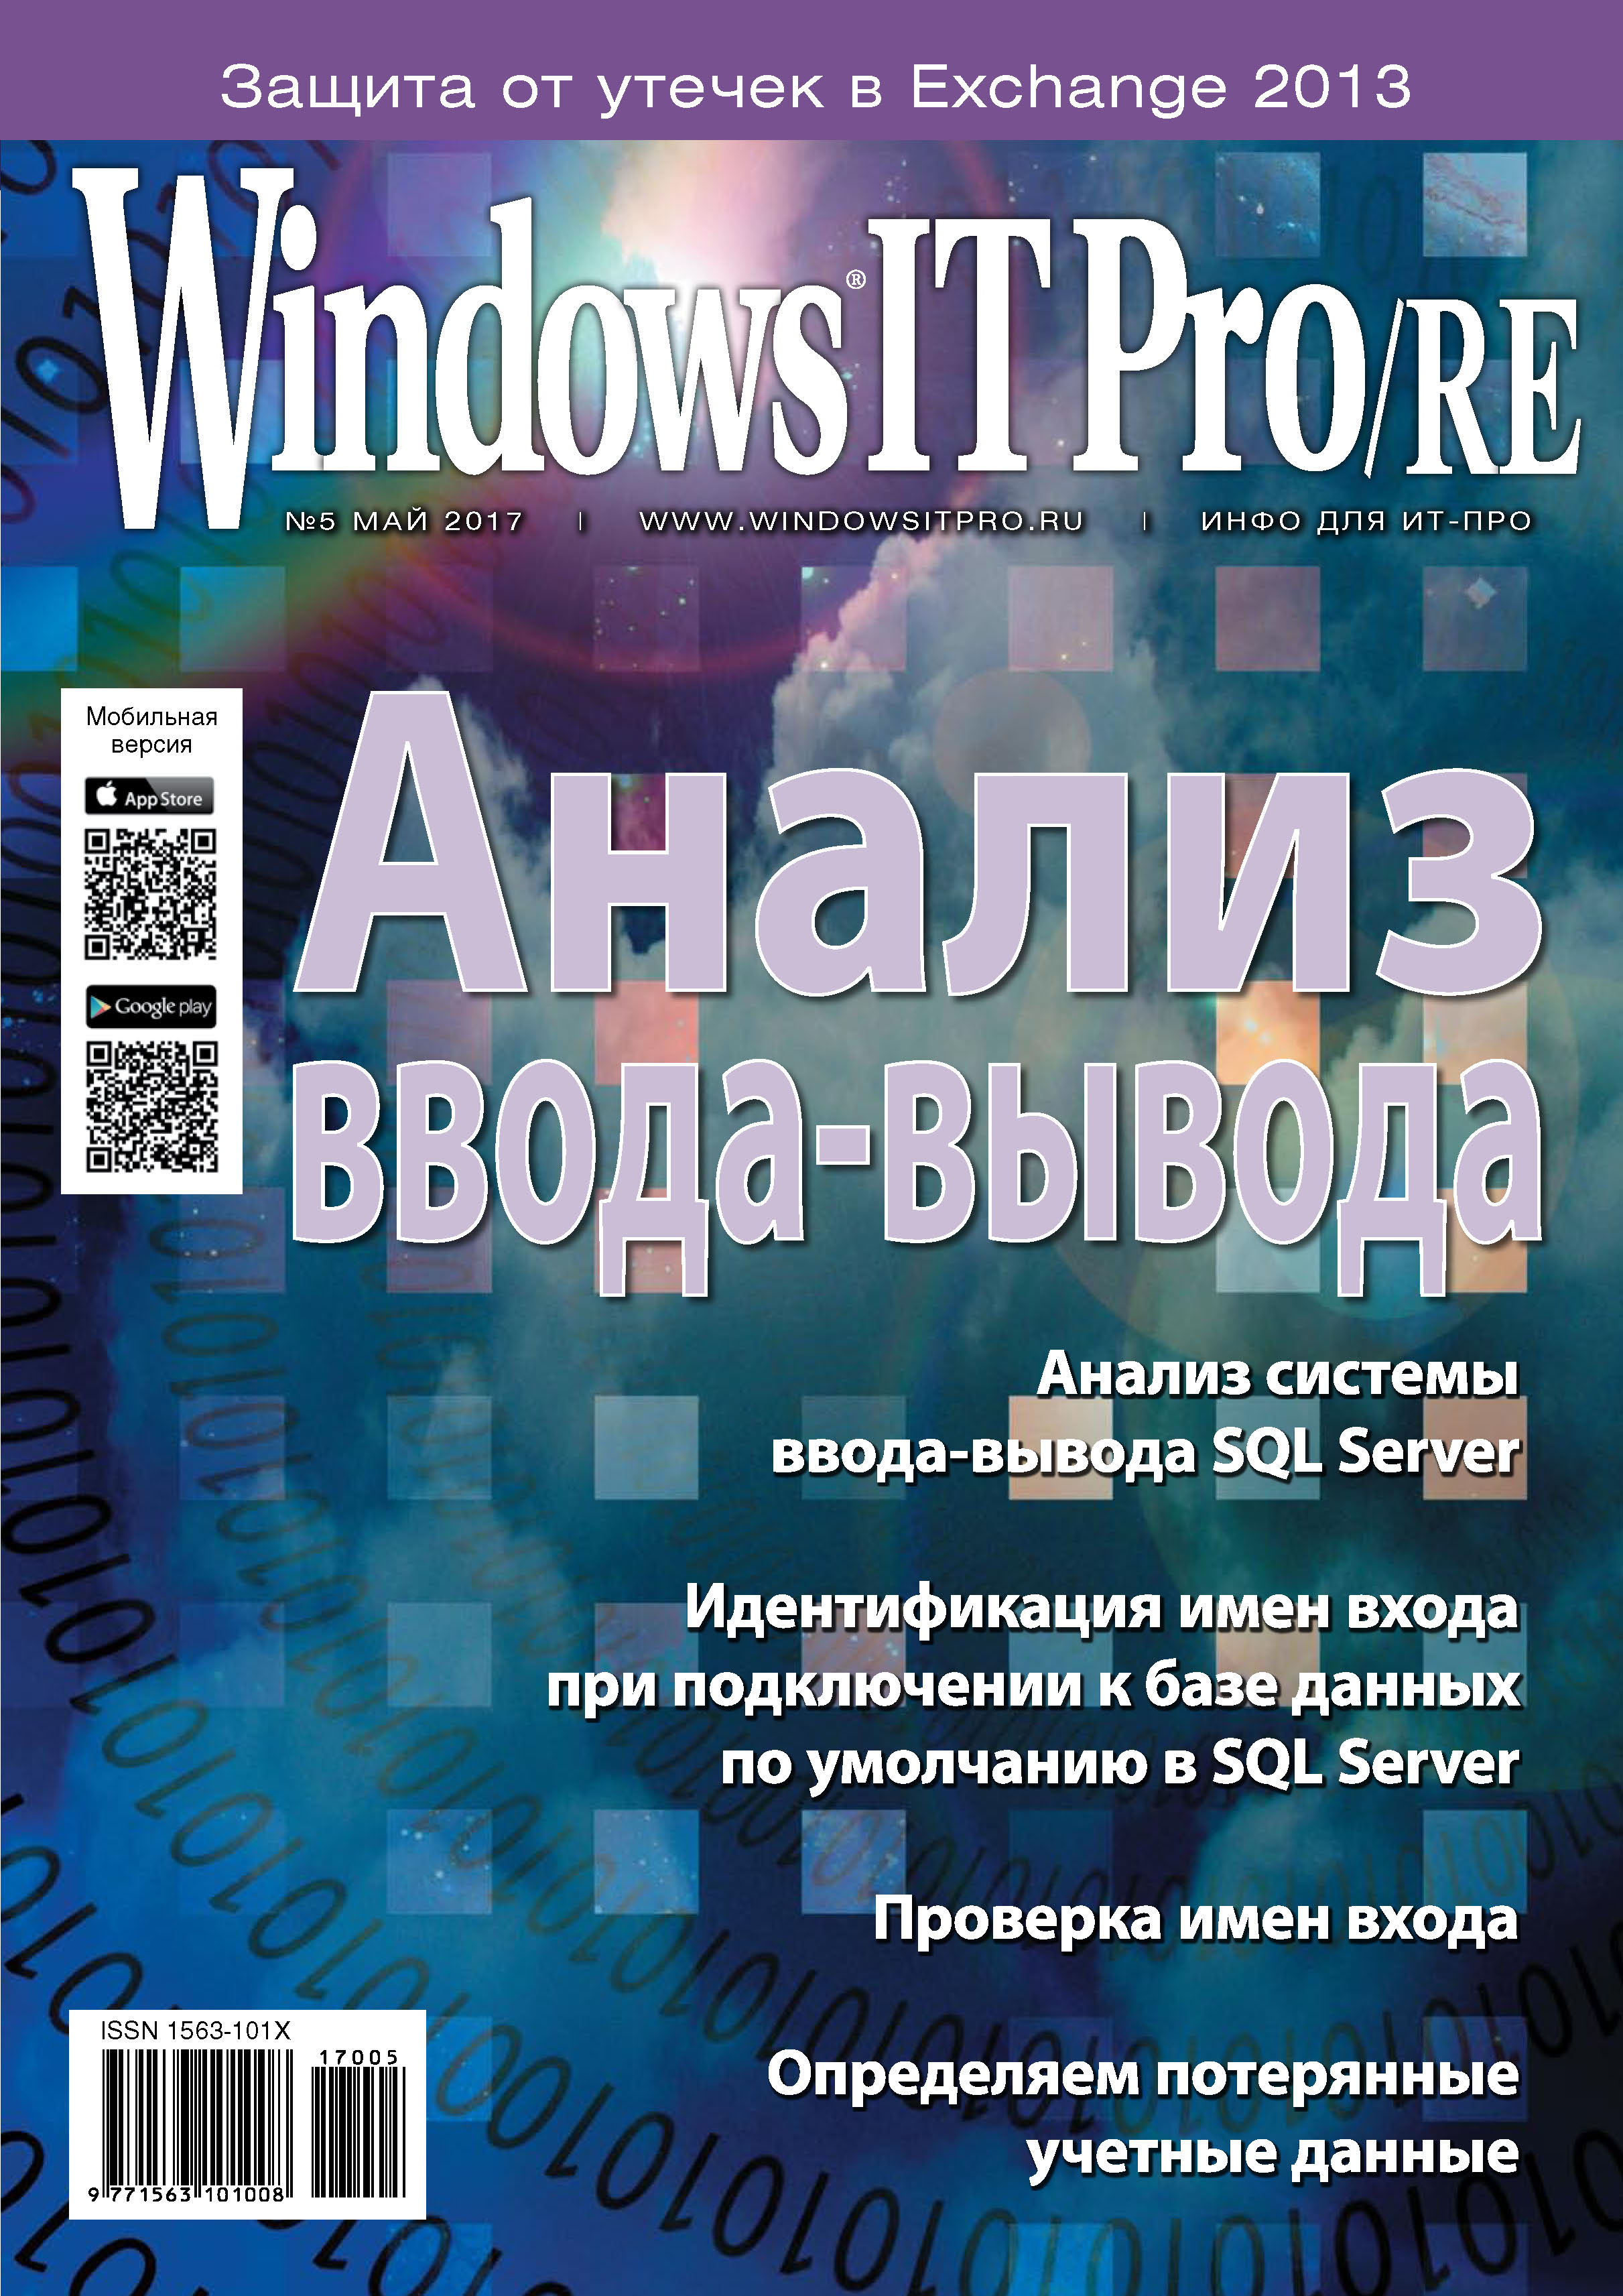 Книга Windows IT Pro 2017 Windows IT Pro/RE №05/2017 созданная Открытые системы может относится к жанру компьютерные журналы, ОС и сети, программы. Стоимость электронной книги Windows IT Pro/RE №05/2017 с идентификатором 24137304 составляет 484.00 руб.